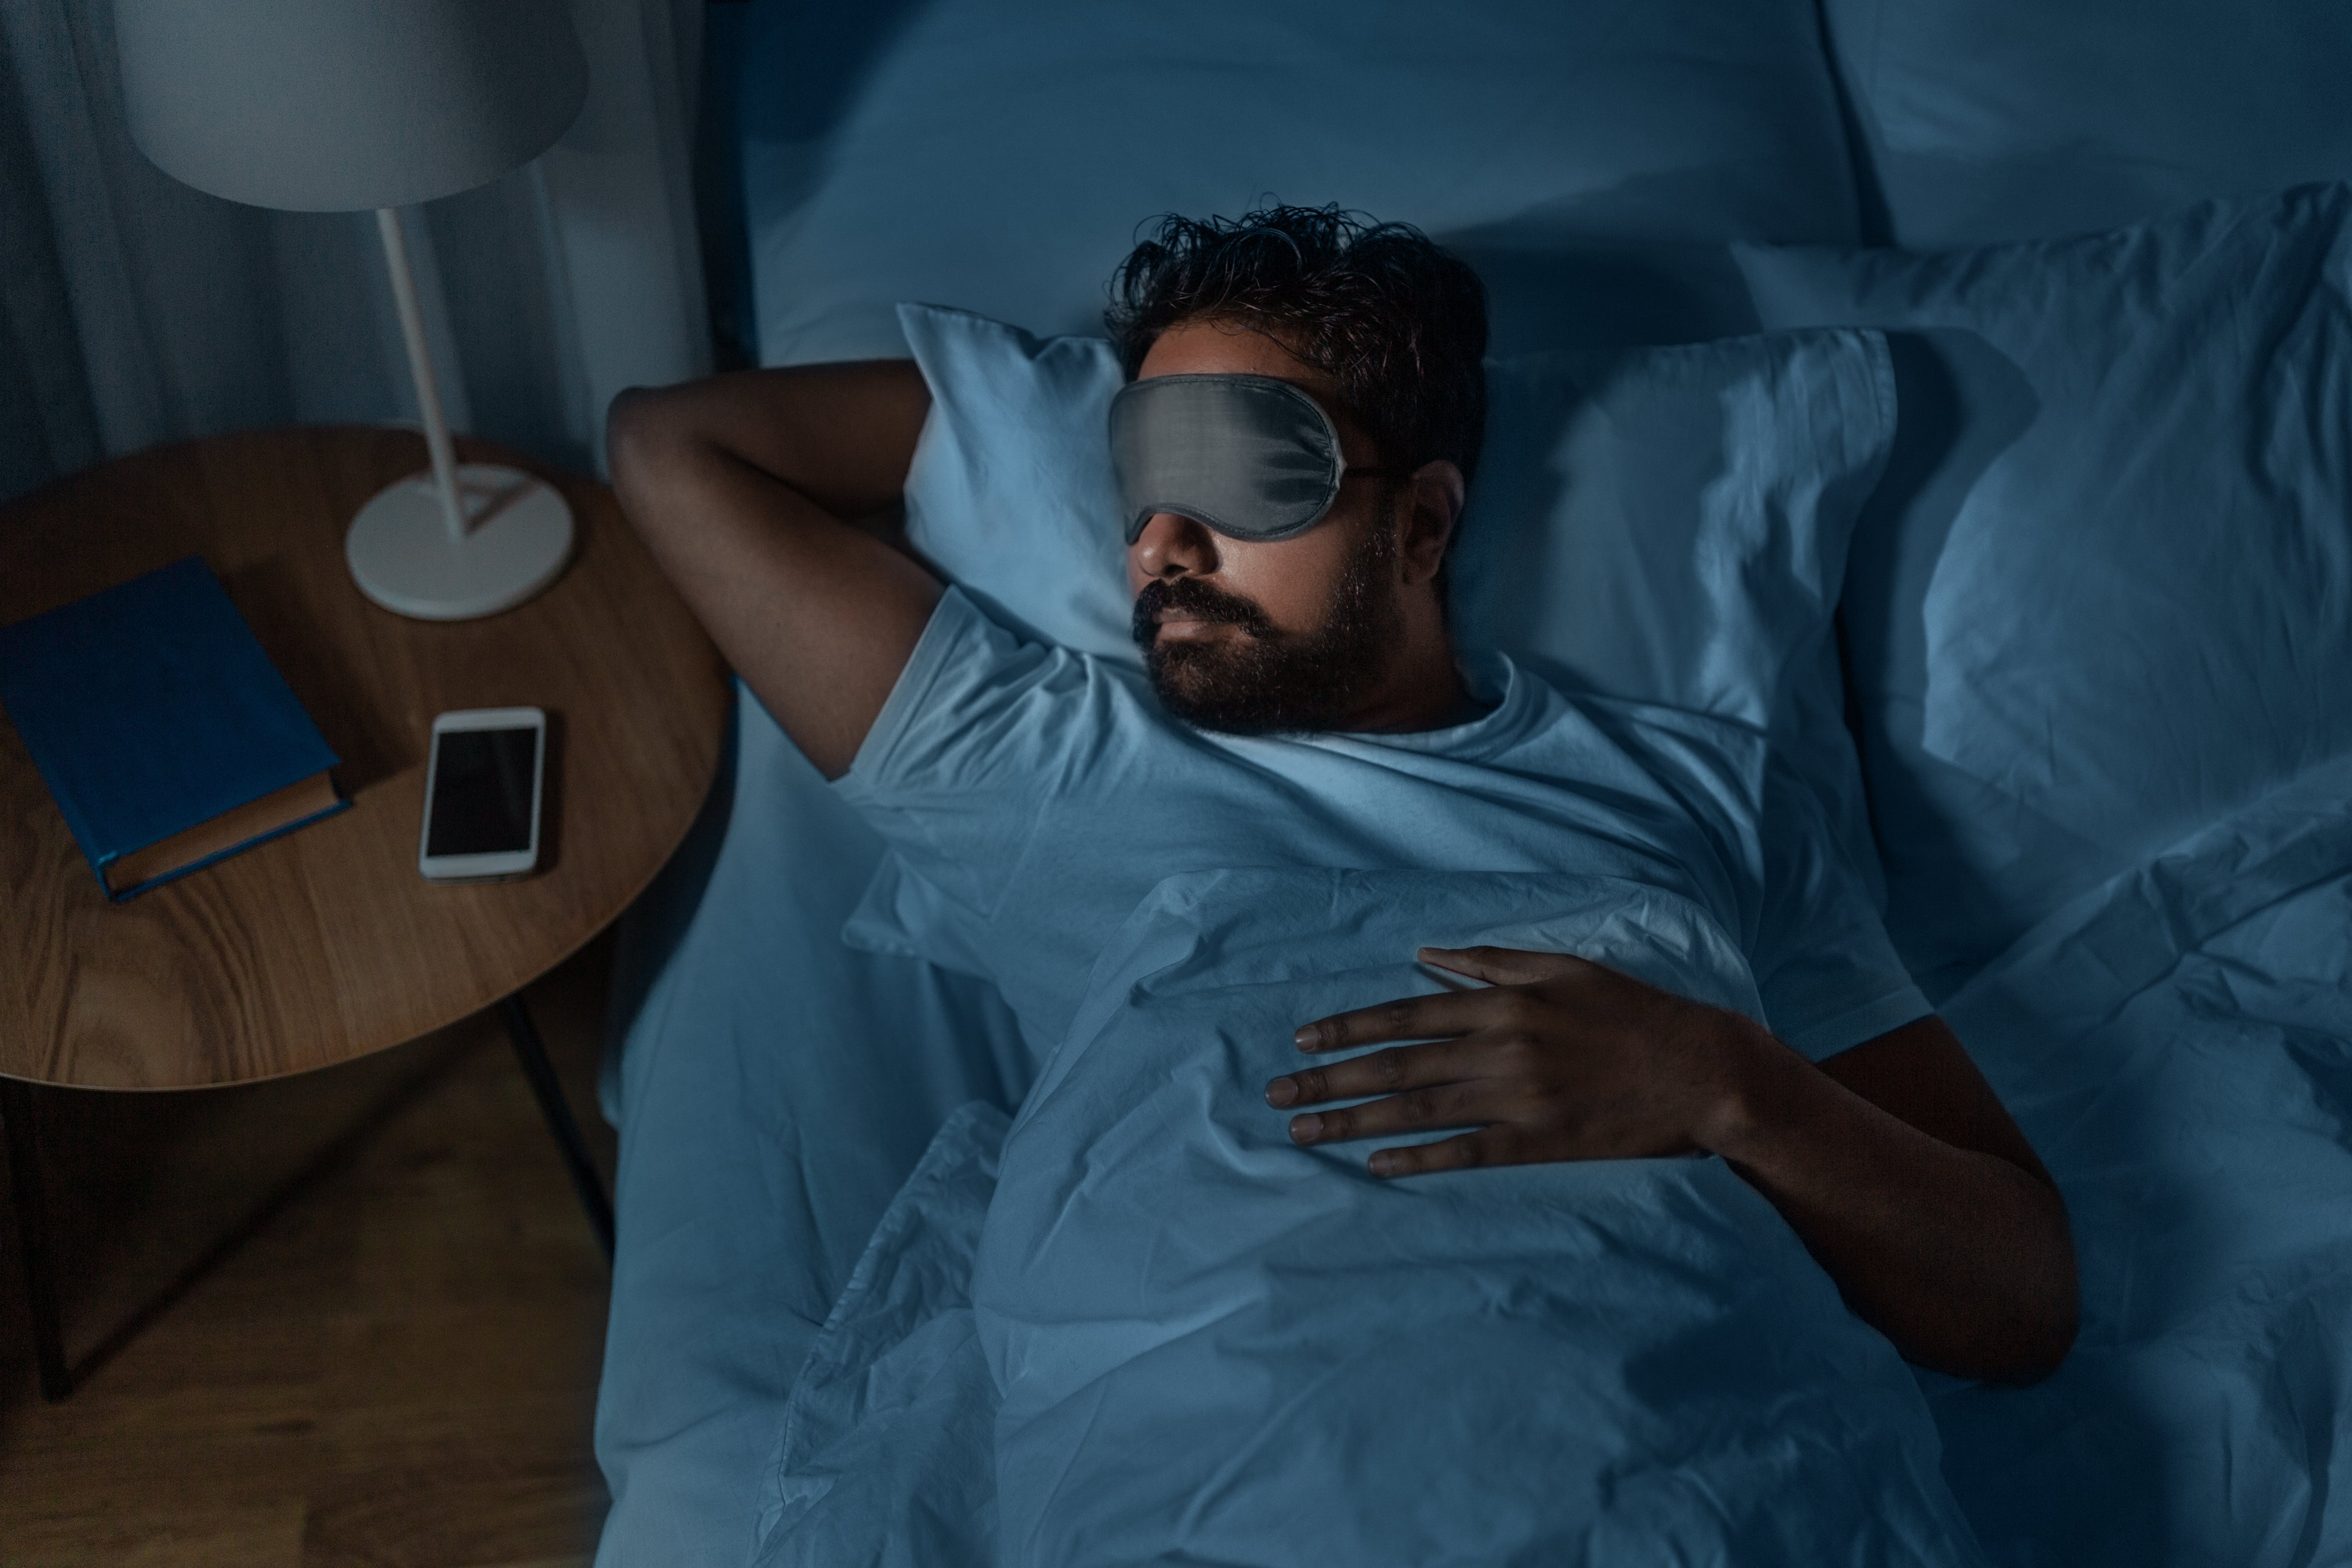 A man wears an eye mask as he sleeps in bed.